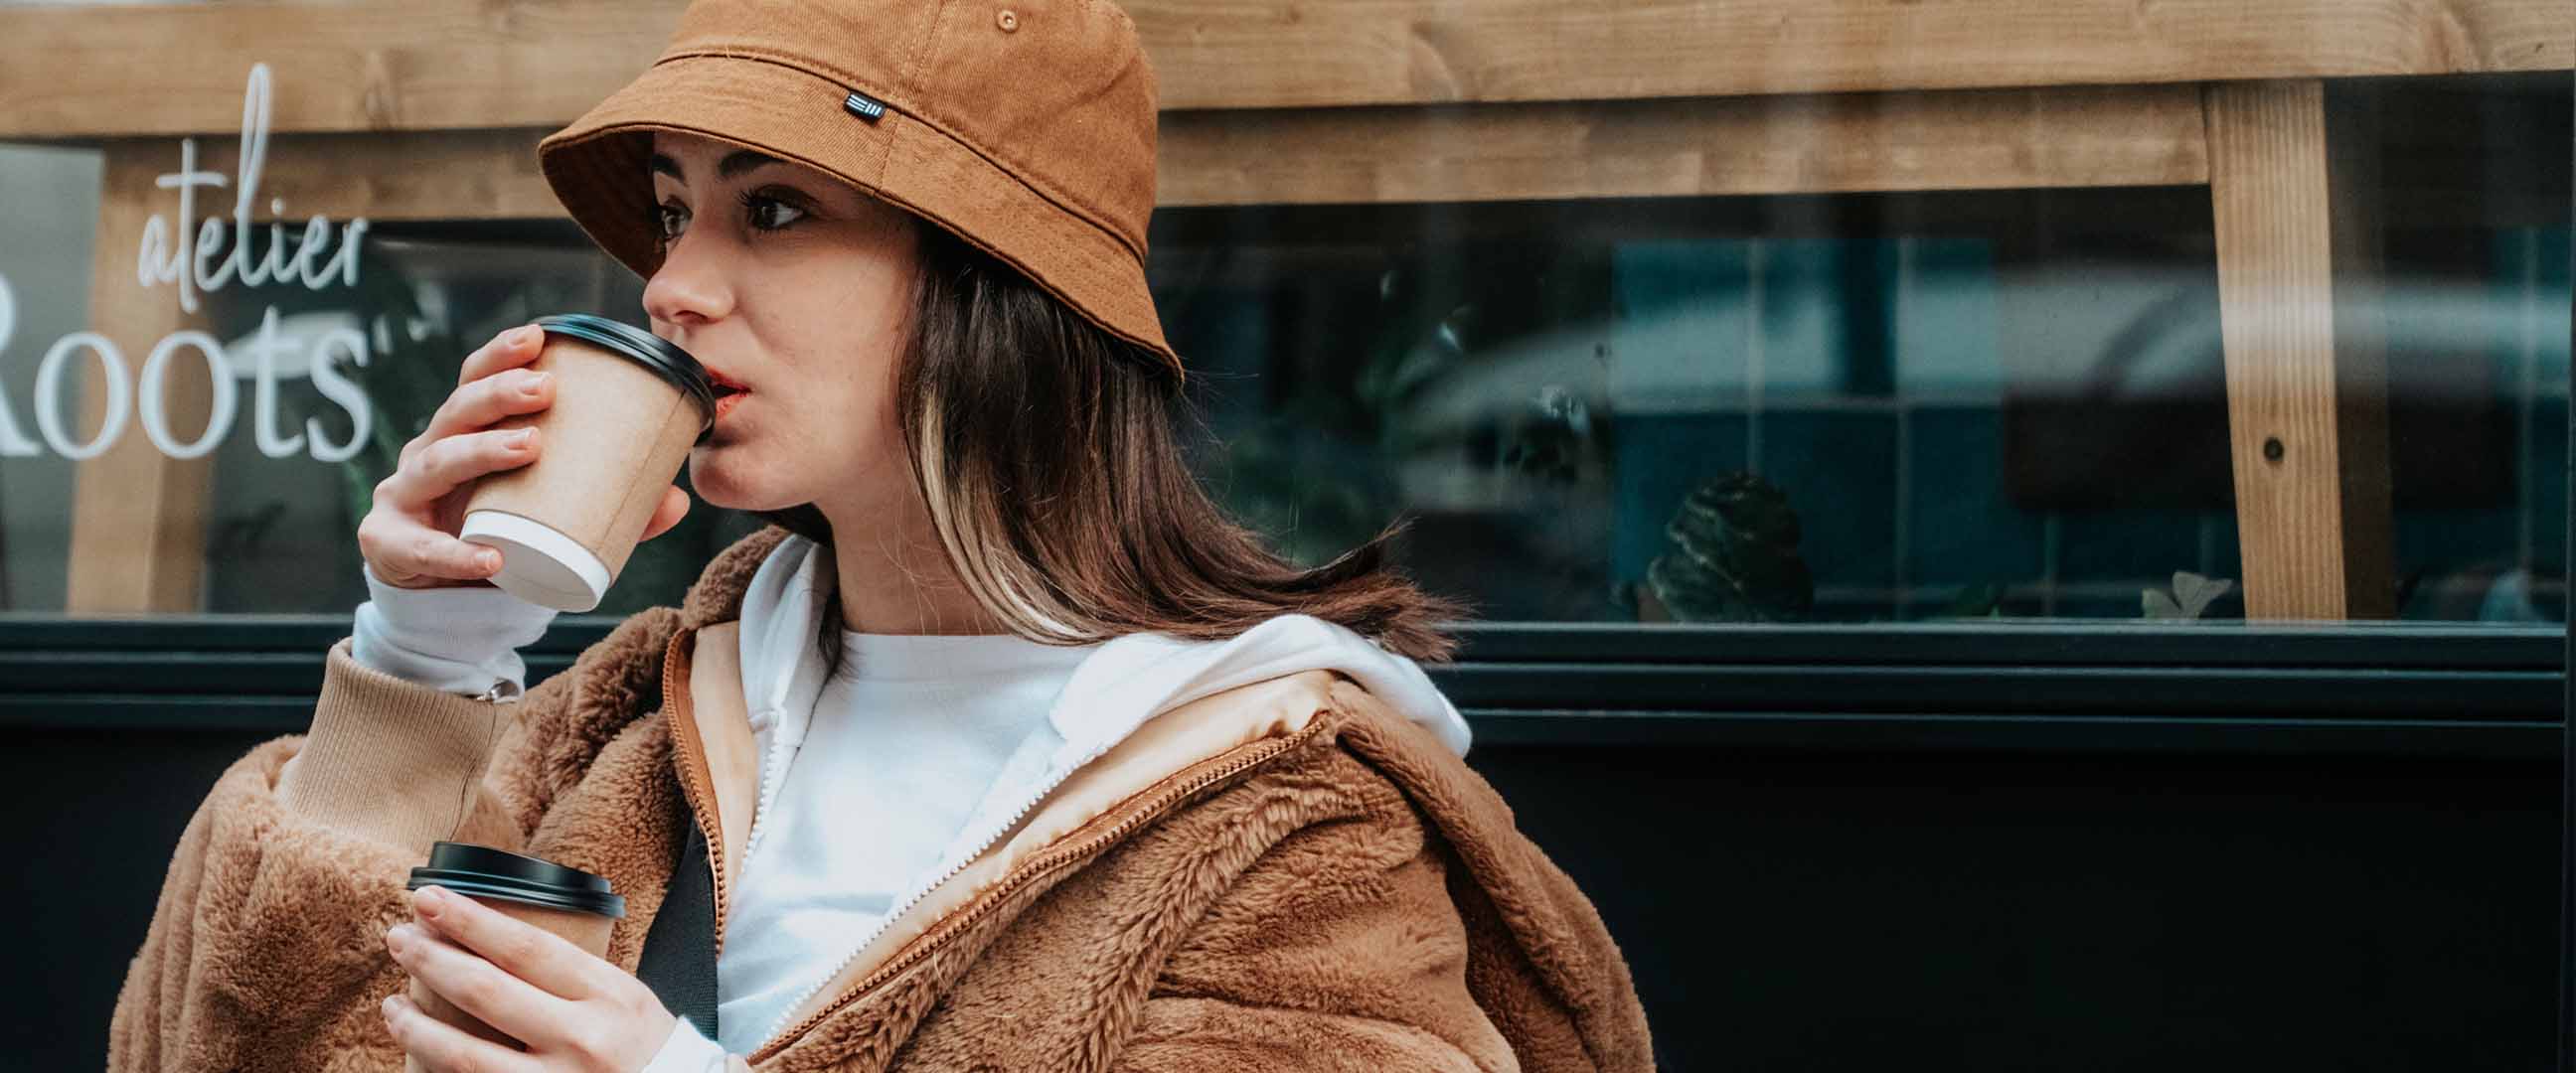 Kvinna i brun buckethat och hoodie dricker kaffe i take away-kopp.